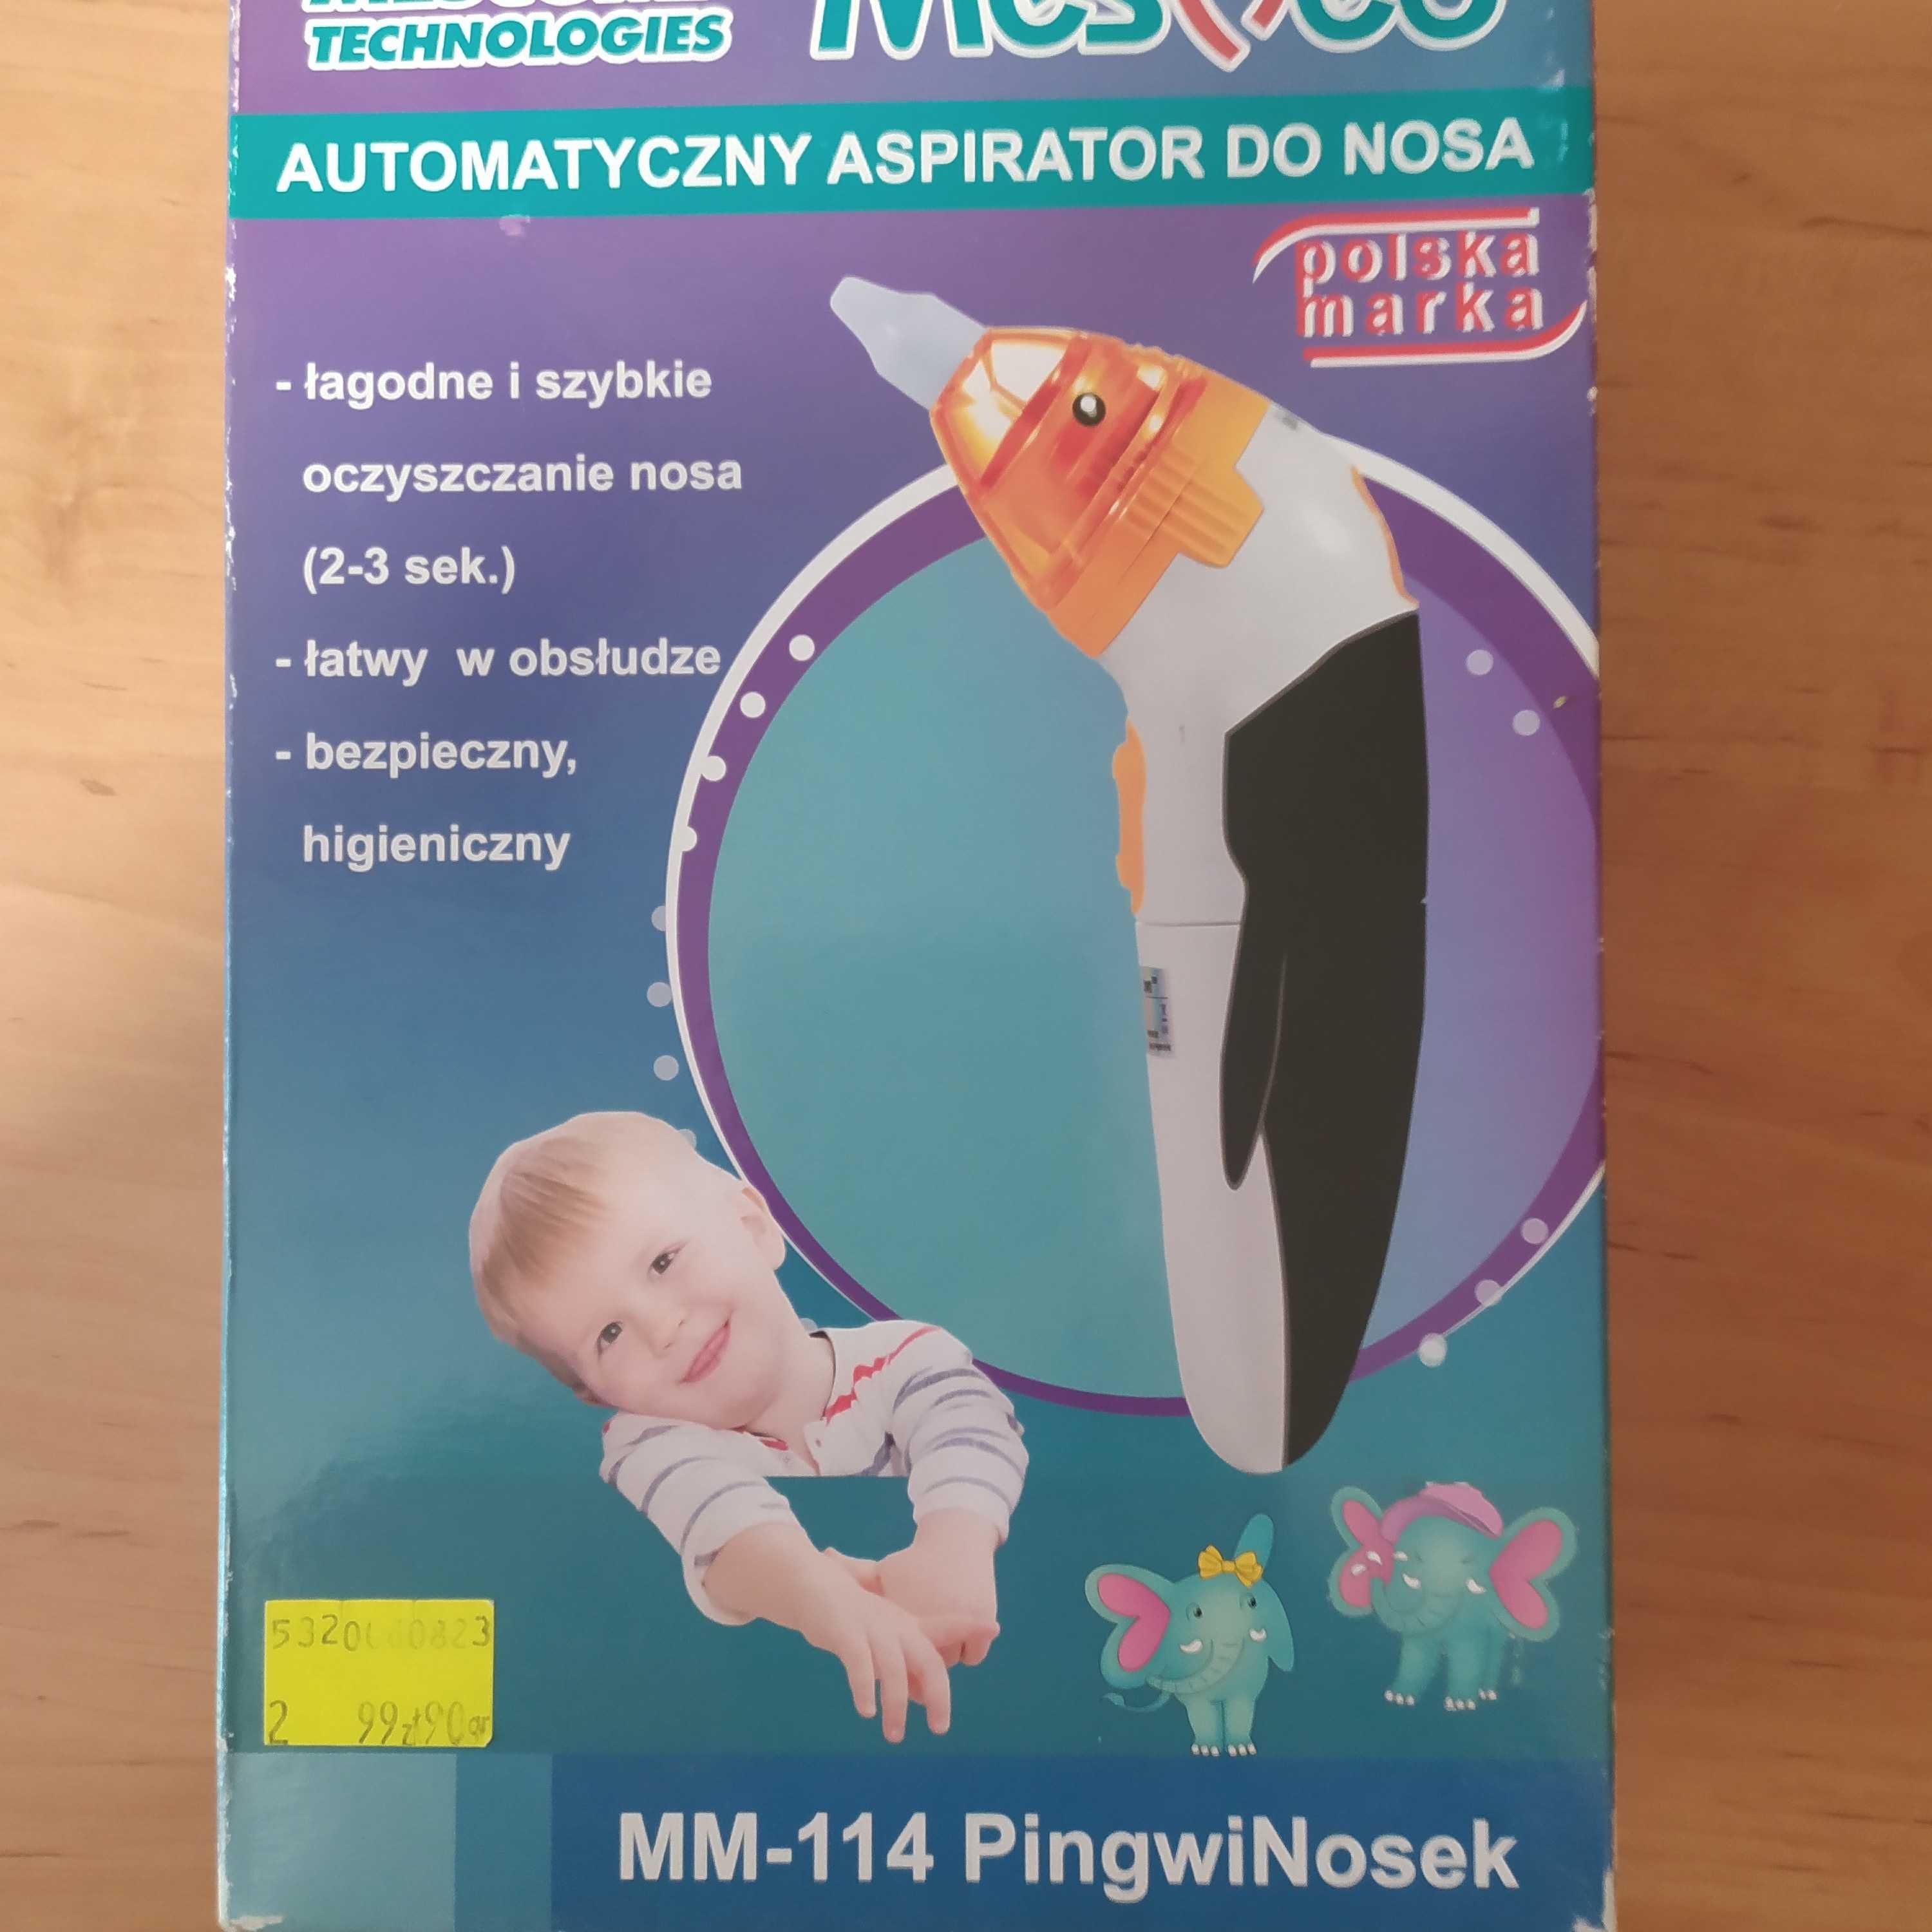 Automatyczny aspirator do nosa dla dzieci.